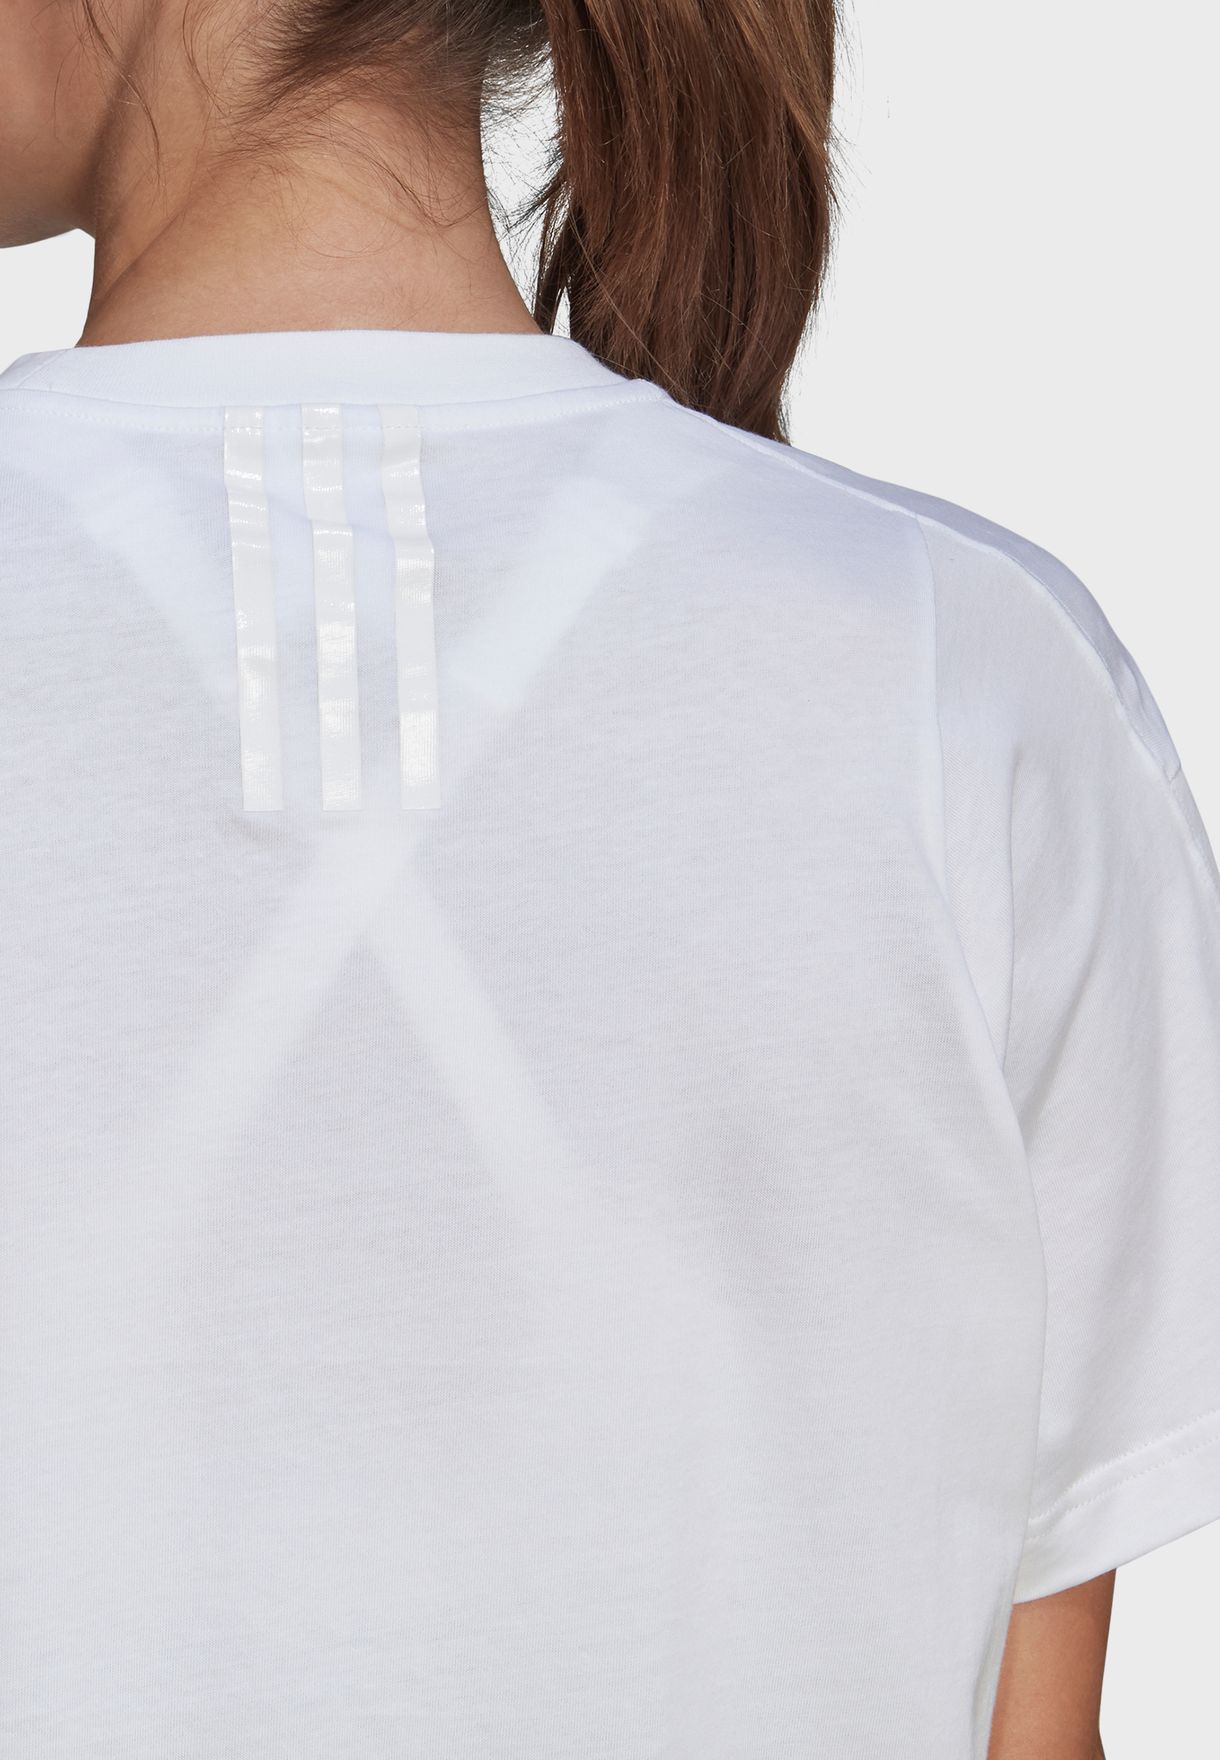 Adidas X Karlie Kloss Crop T-Shirt